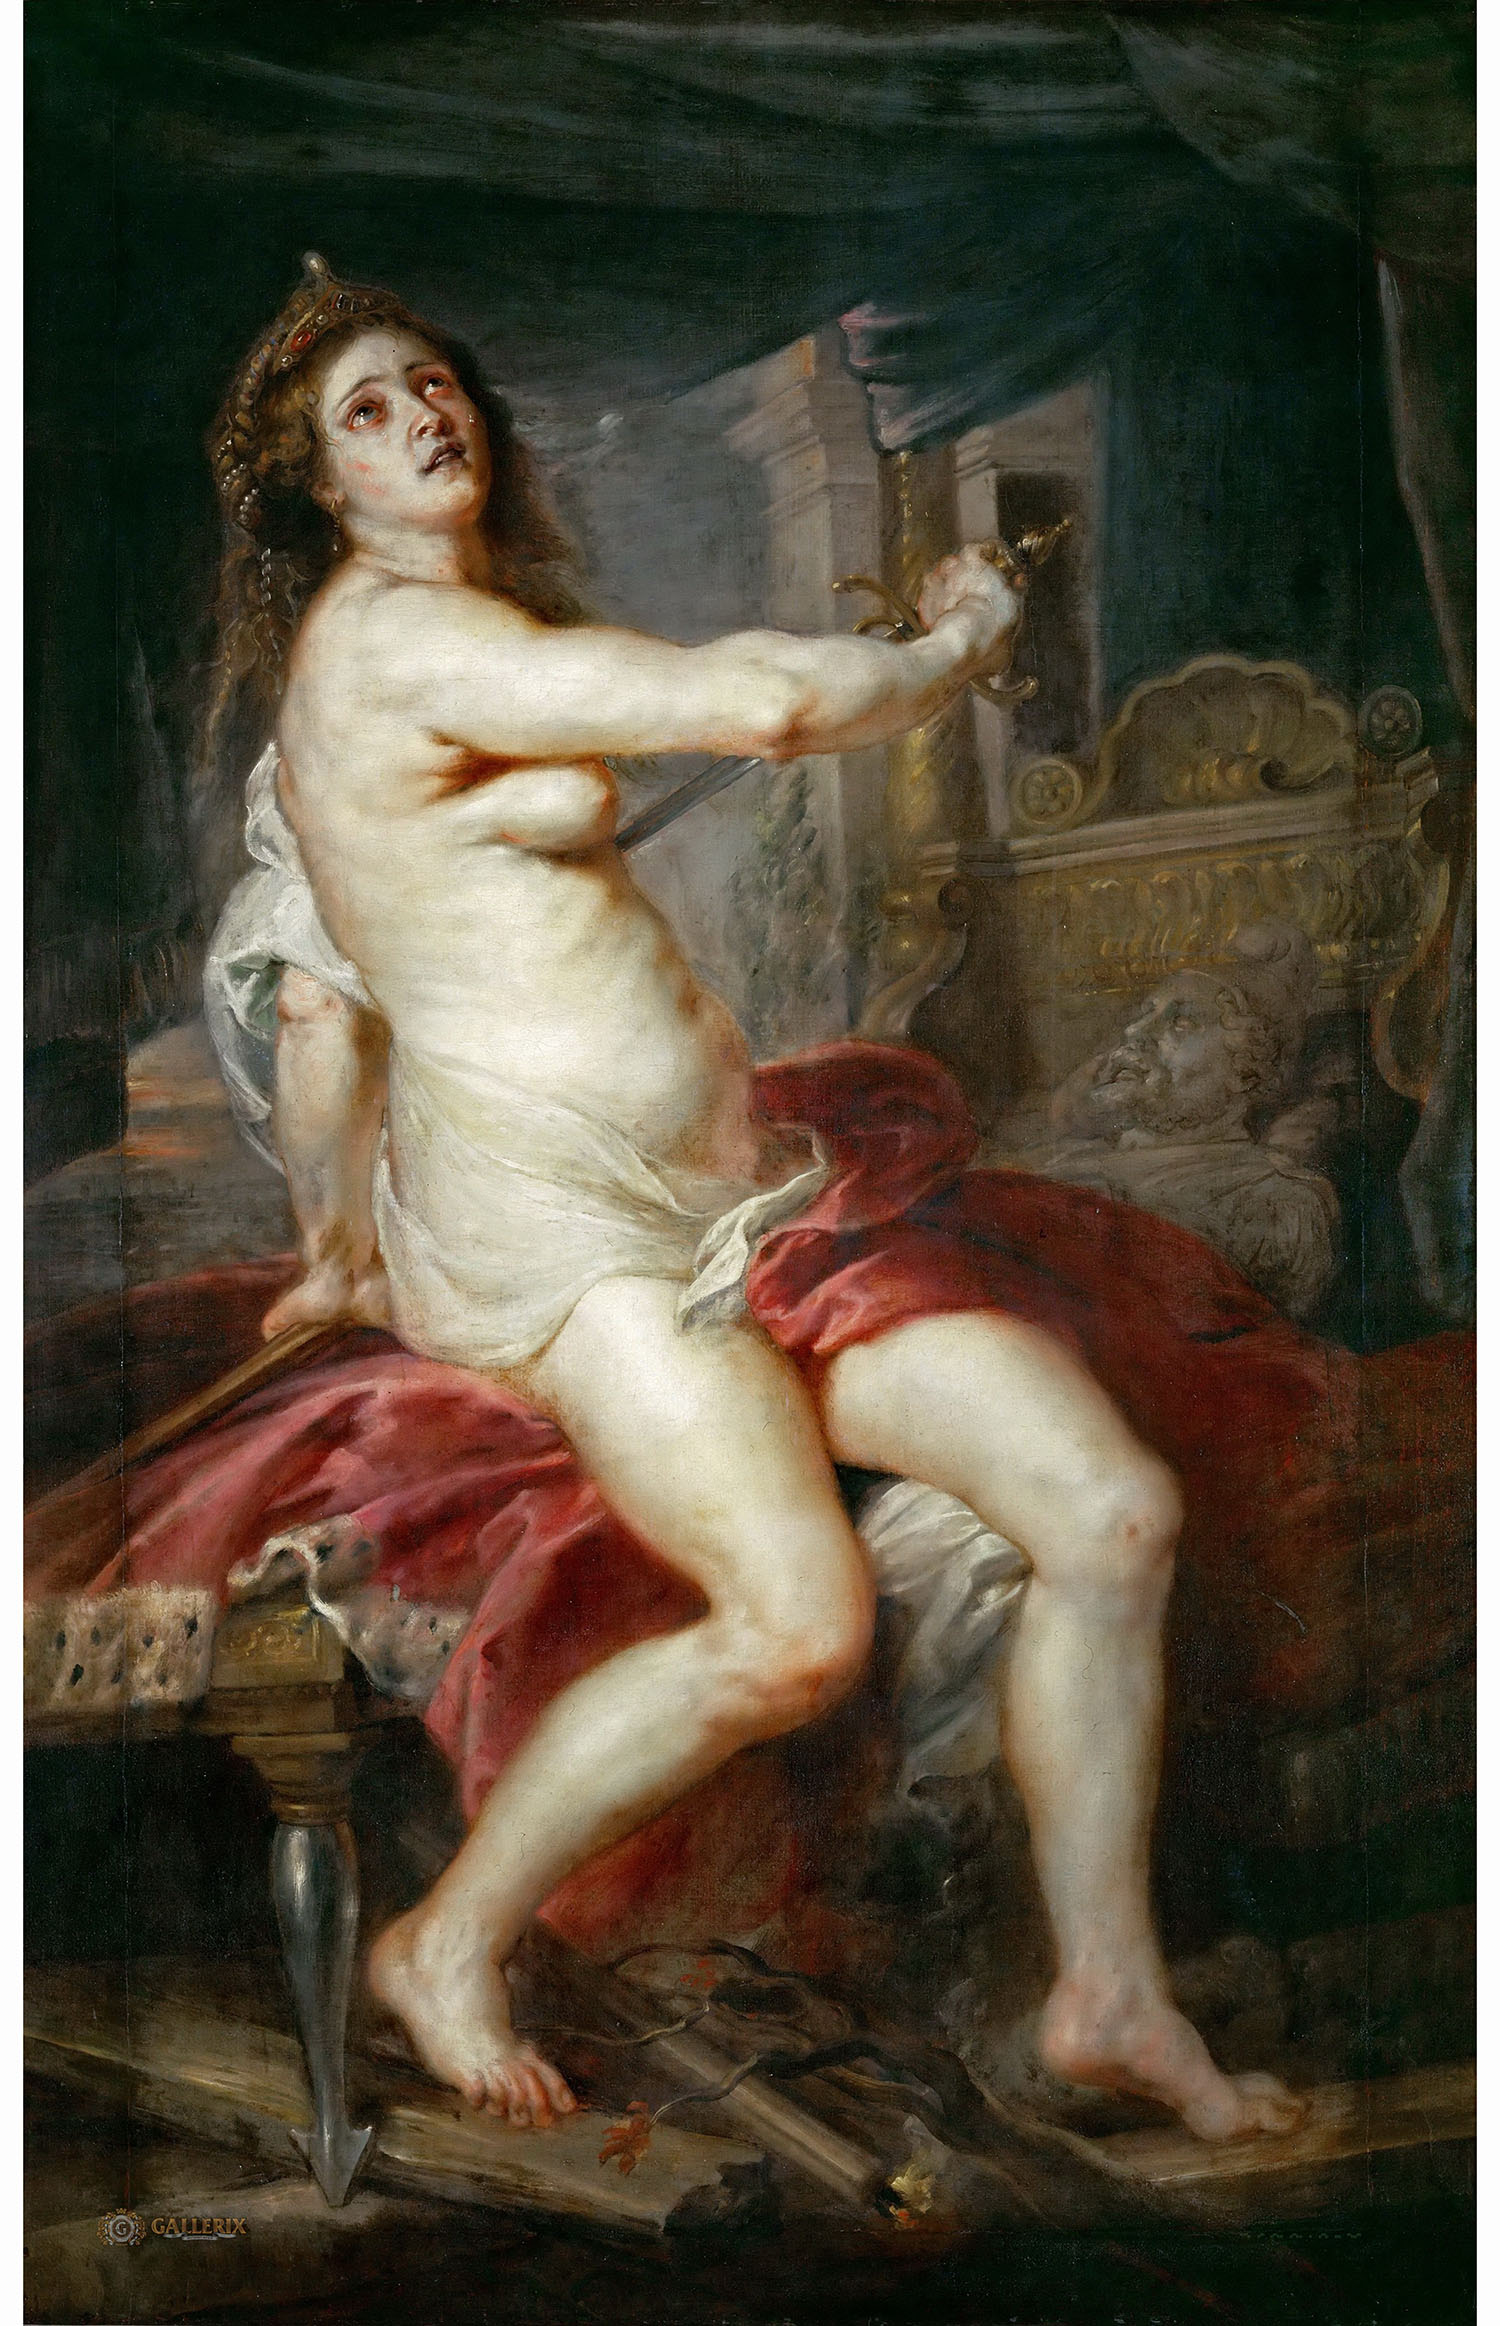 Питер Пауль Рубенс. "Смерть Дидоны". 1635-1638. Лувр, Париж.